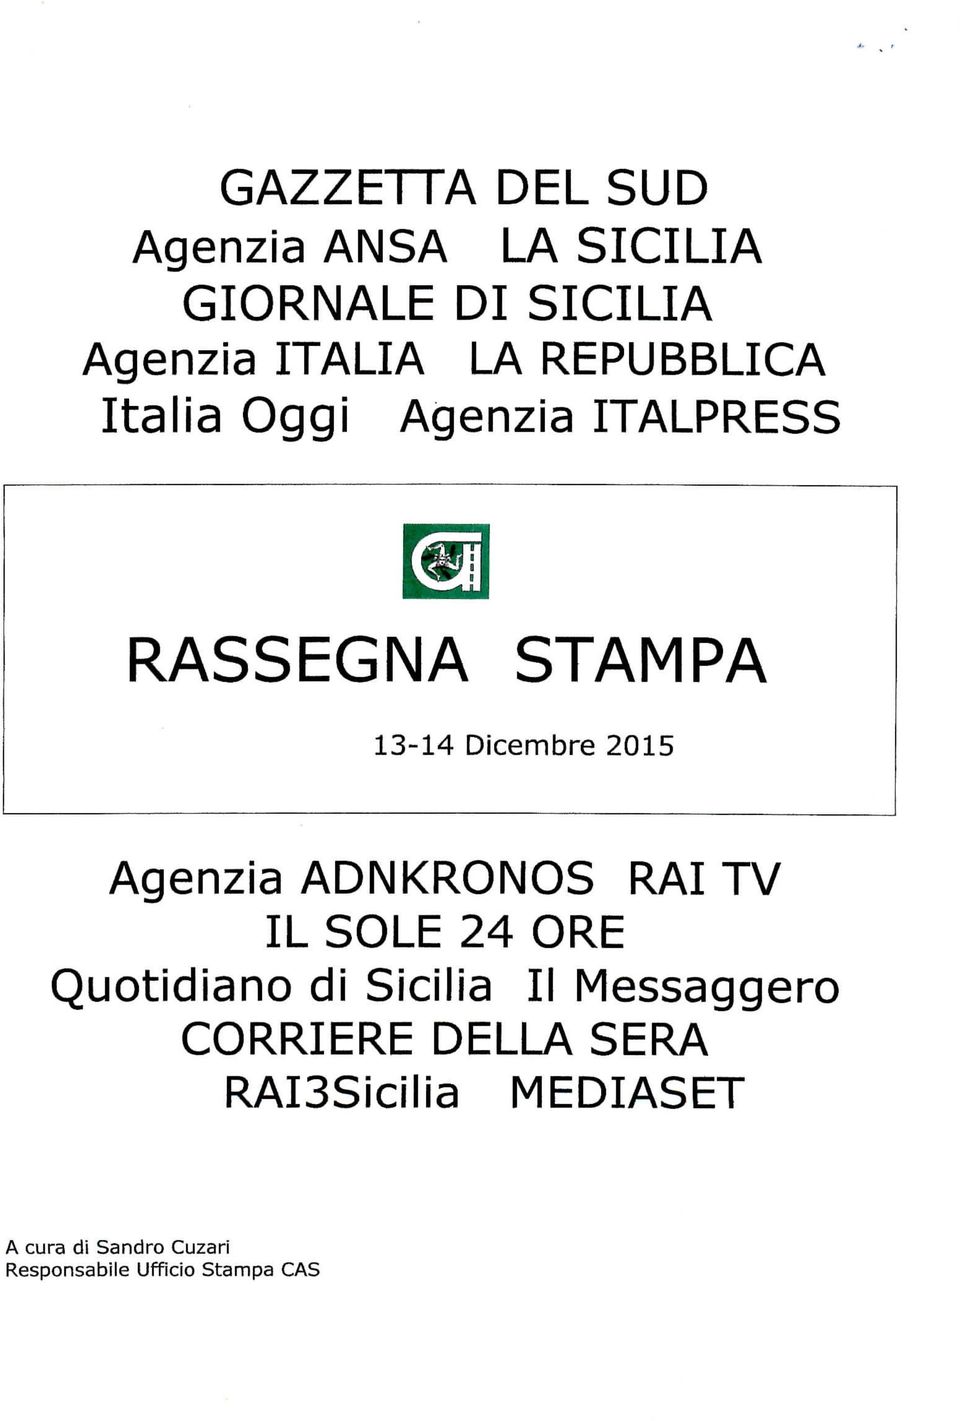 Agenzia ADNKRONOS RAI TV IL SOLE 24 ORE Quotidiano di Sicilia II Messaggero